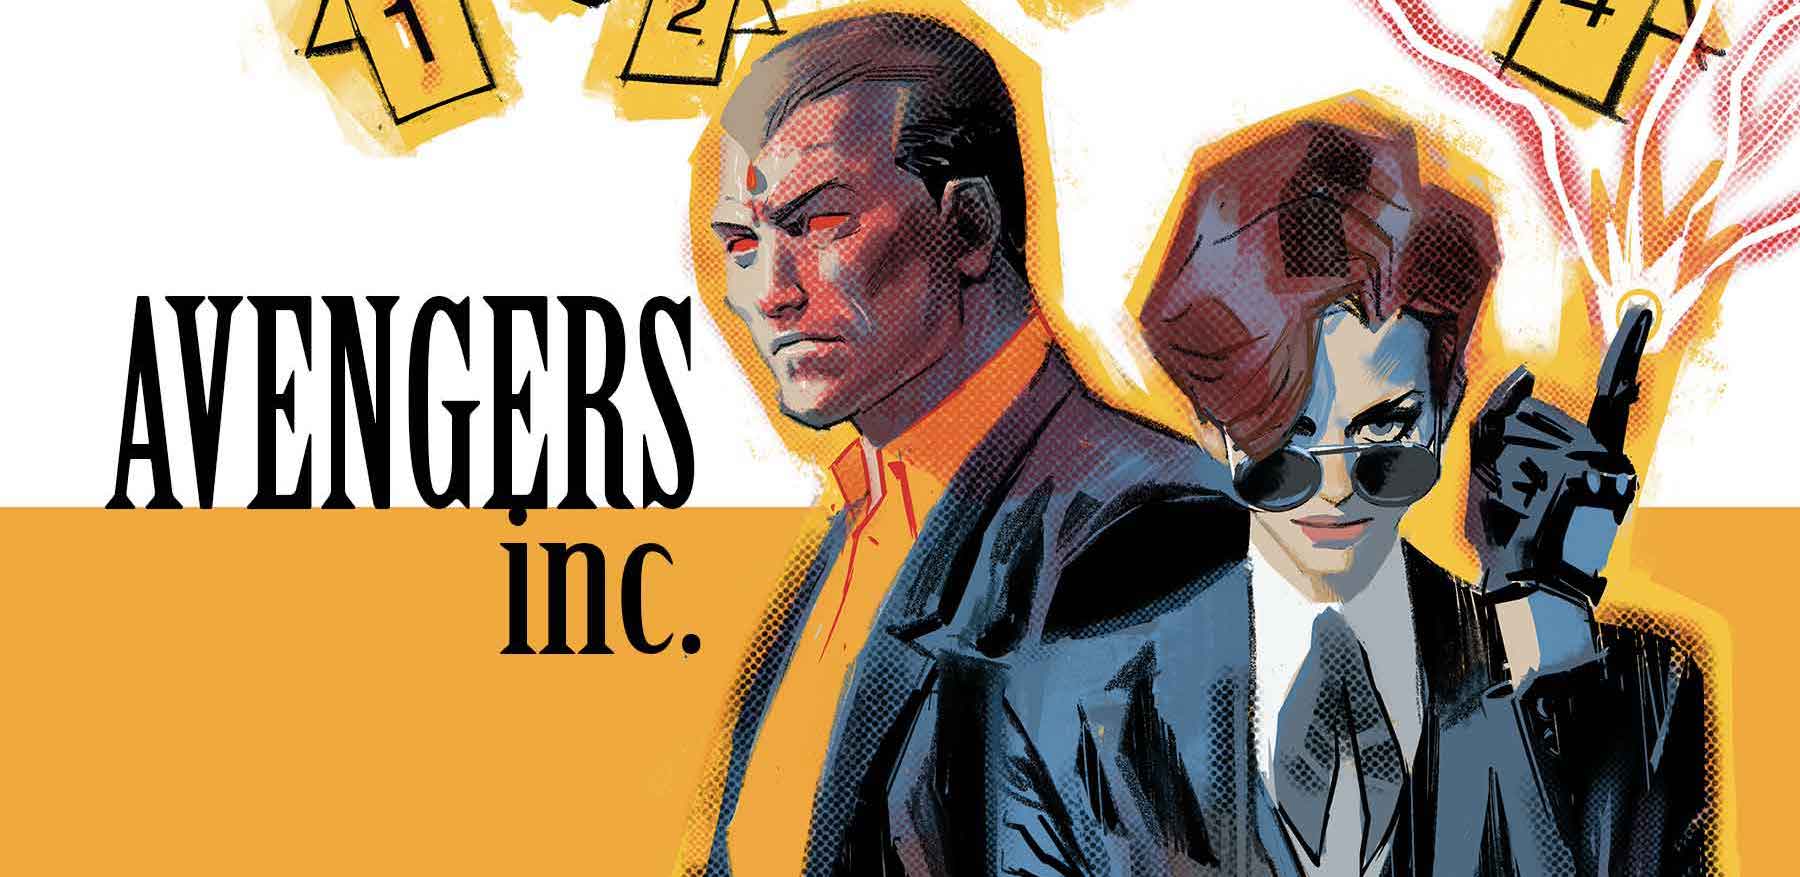 New series 'Avengers Inc.' launching crime solving team in September 2023